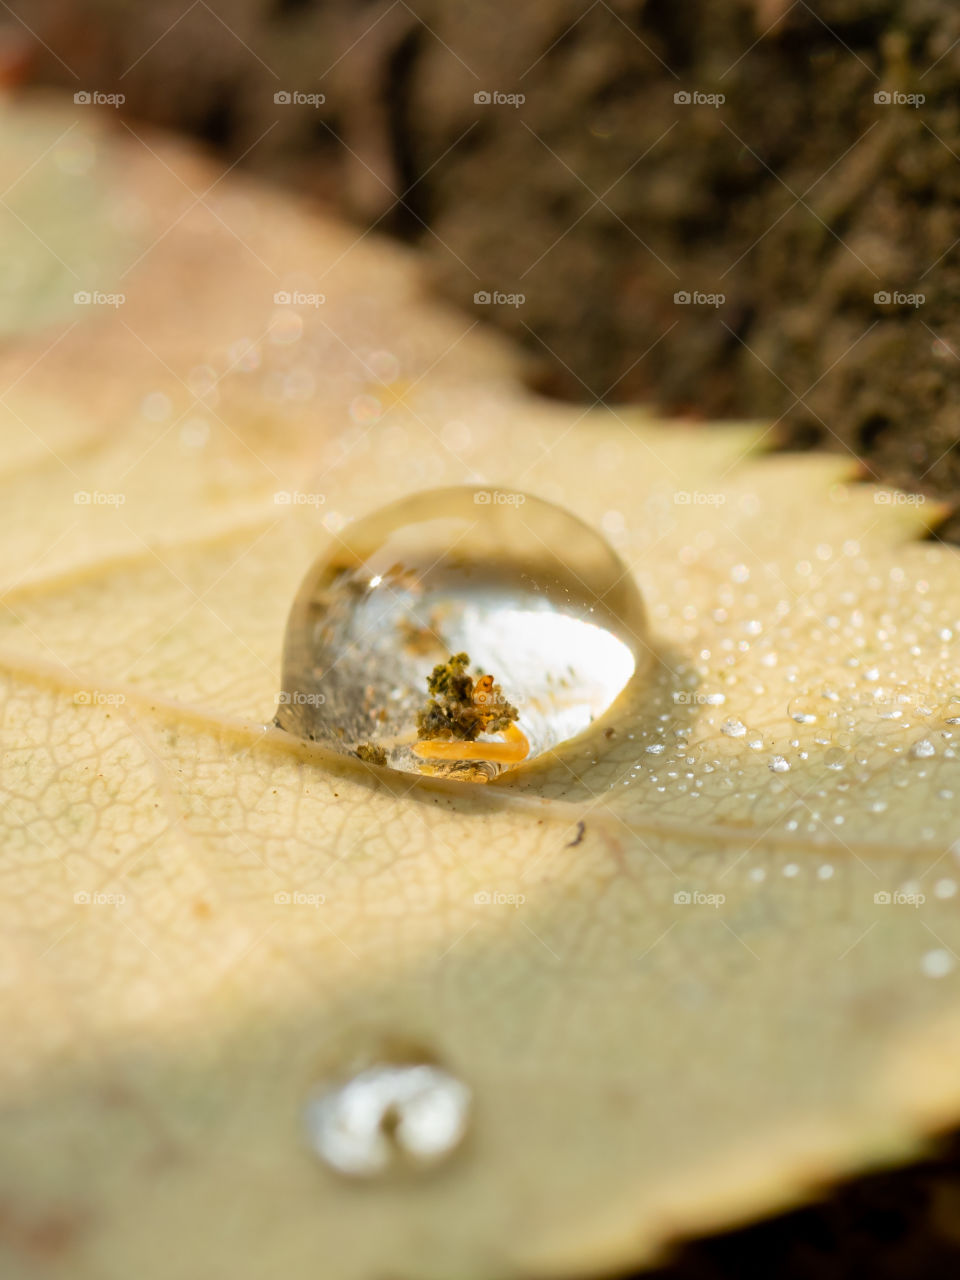 Larva in dews